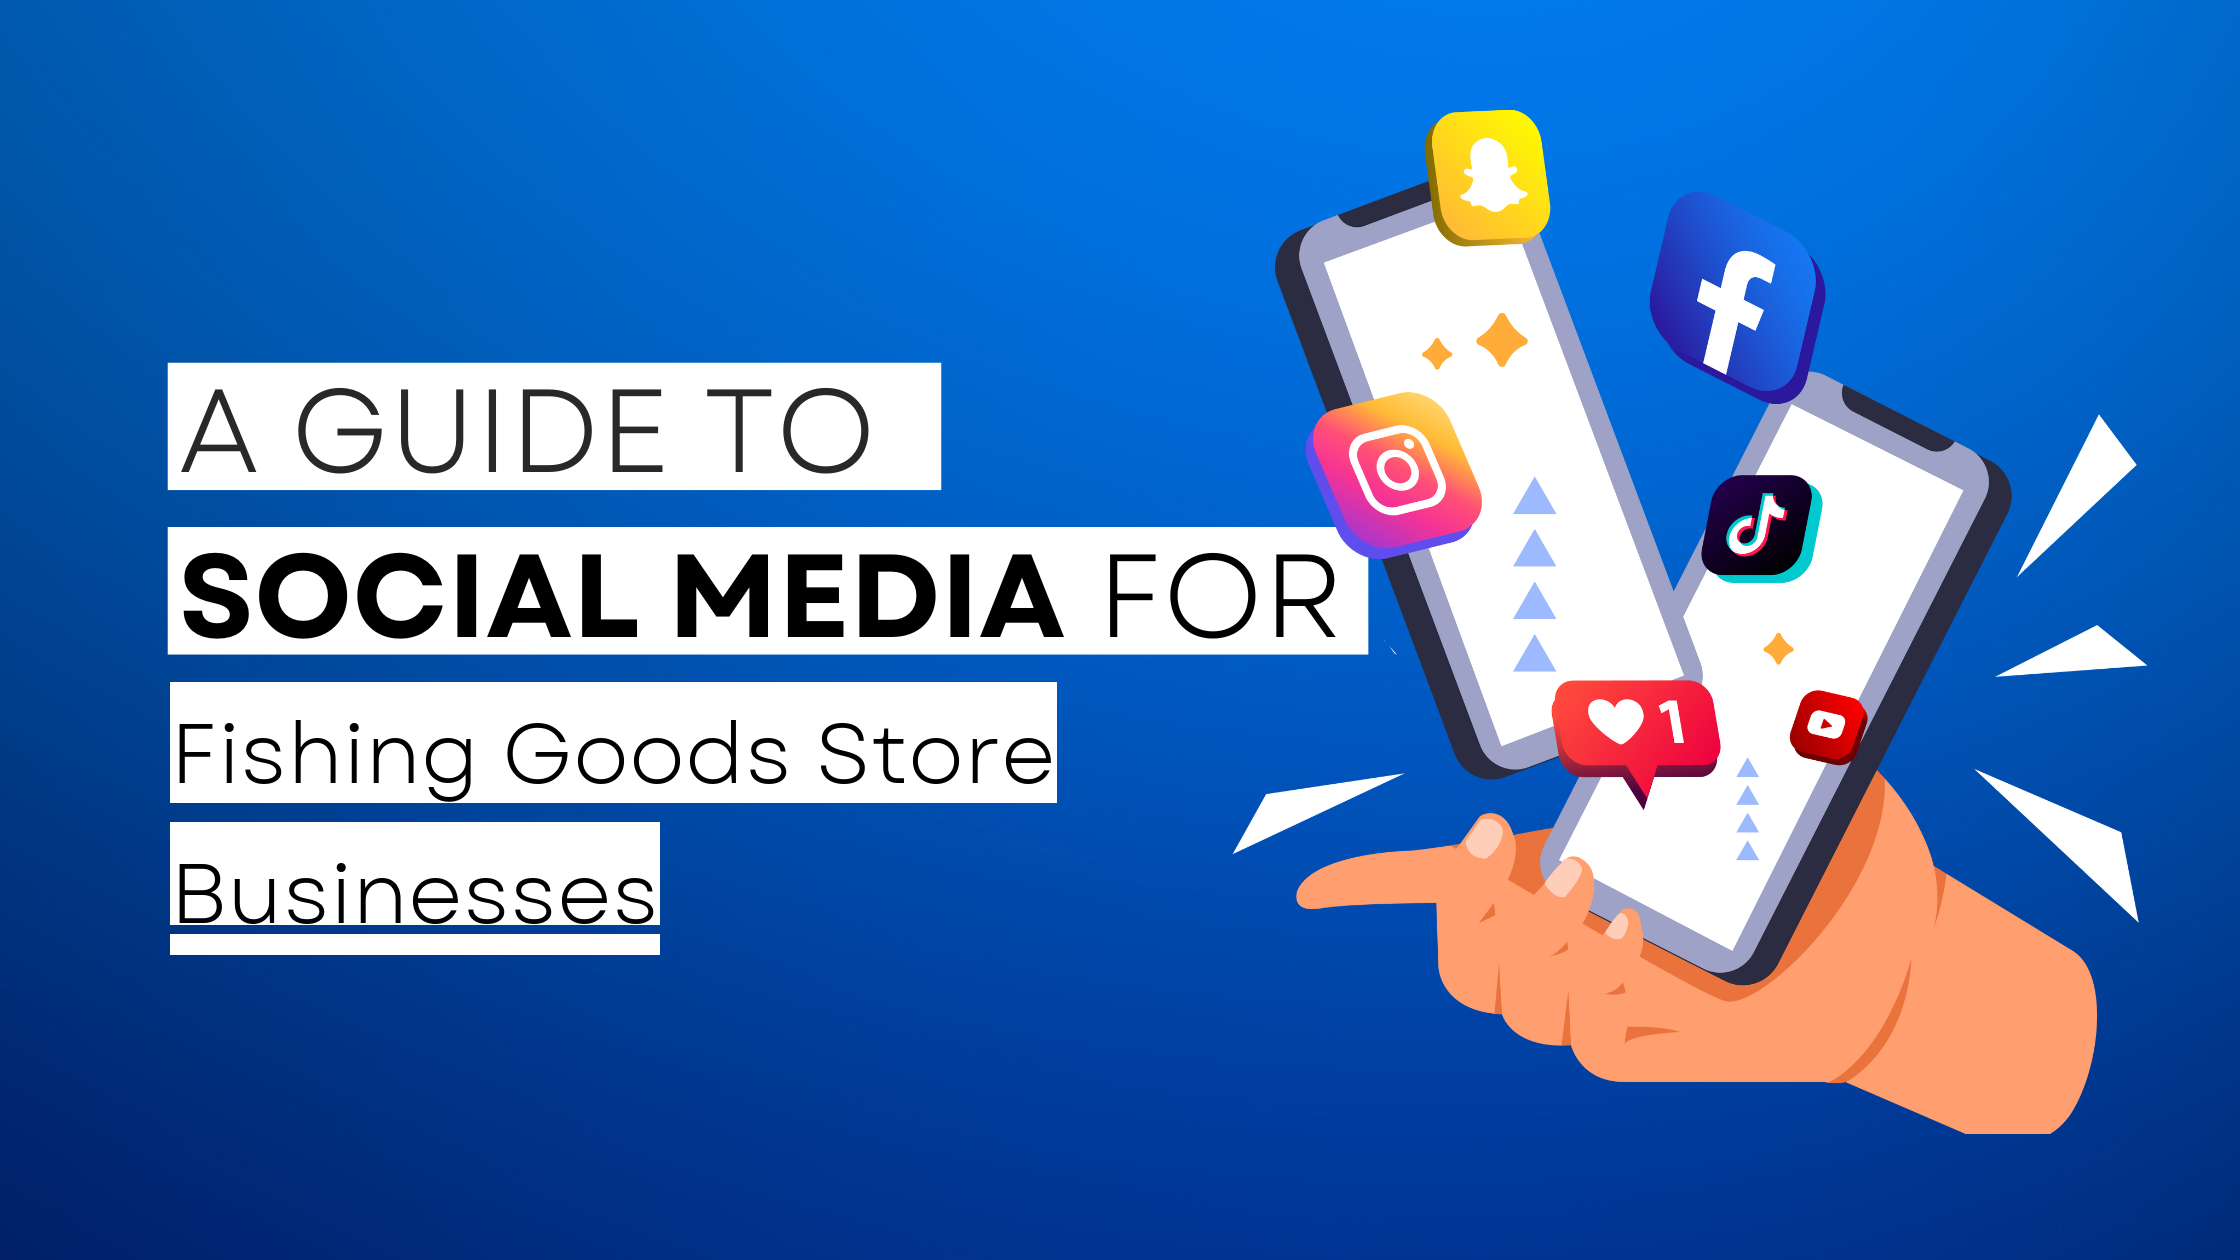 How to start Fishing Goods Store on social media